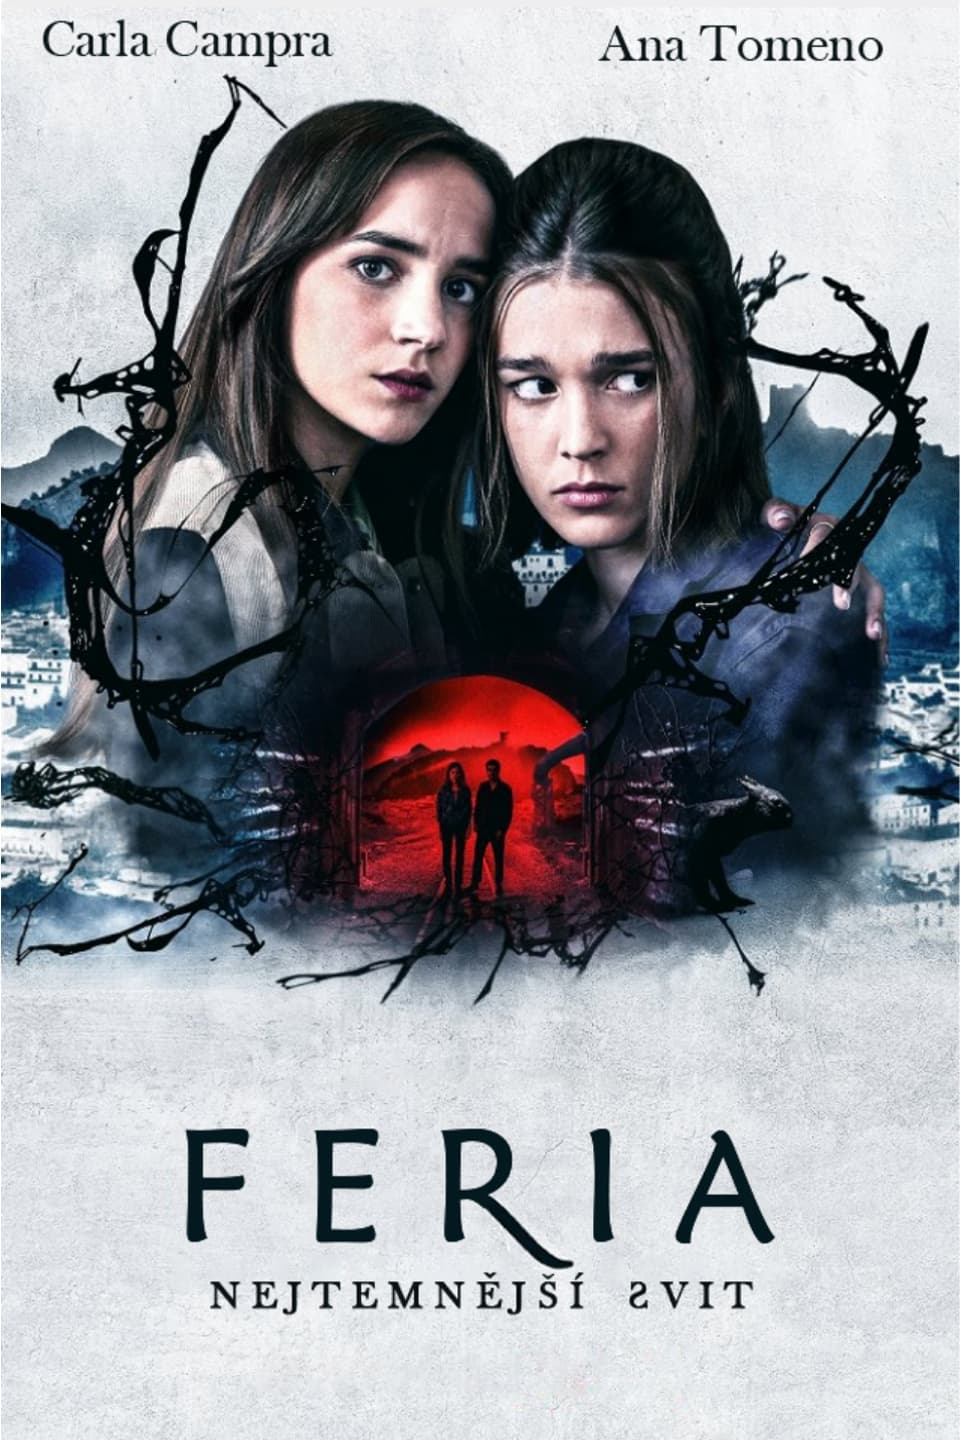 Plakát pro film “Feria: Nejtemnější svit”